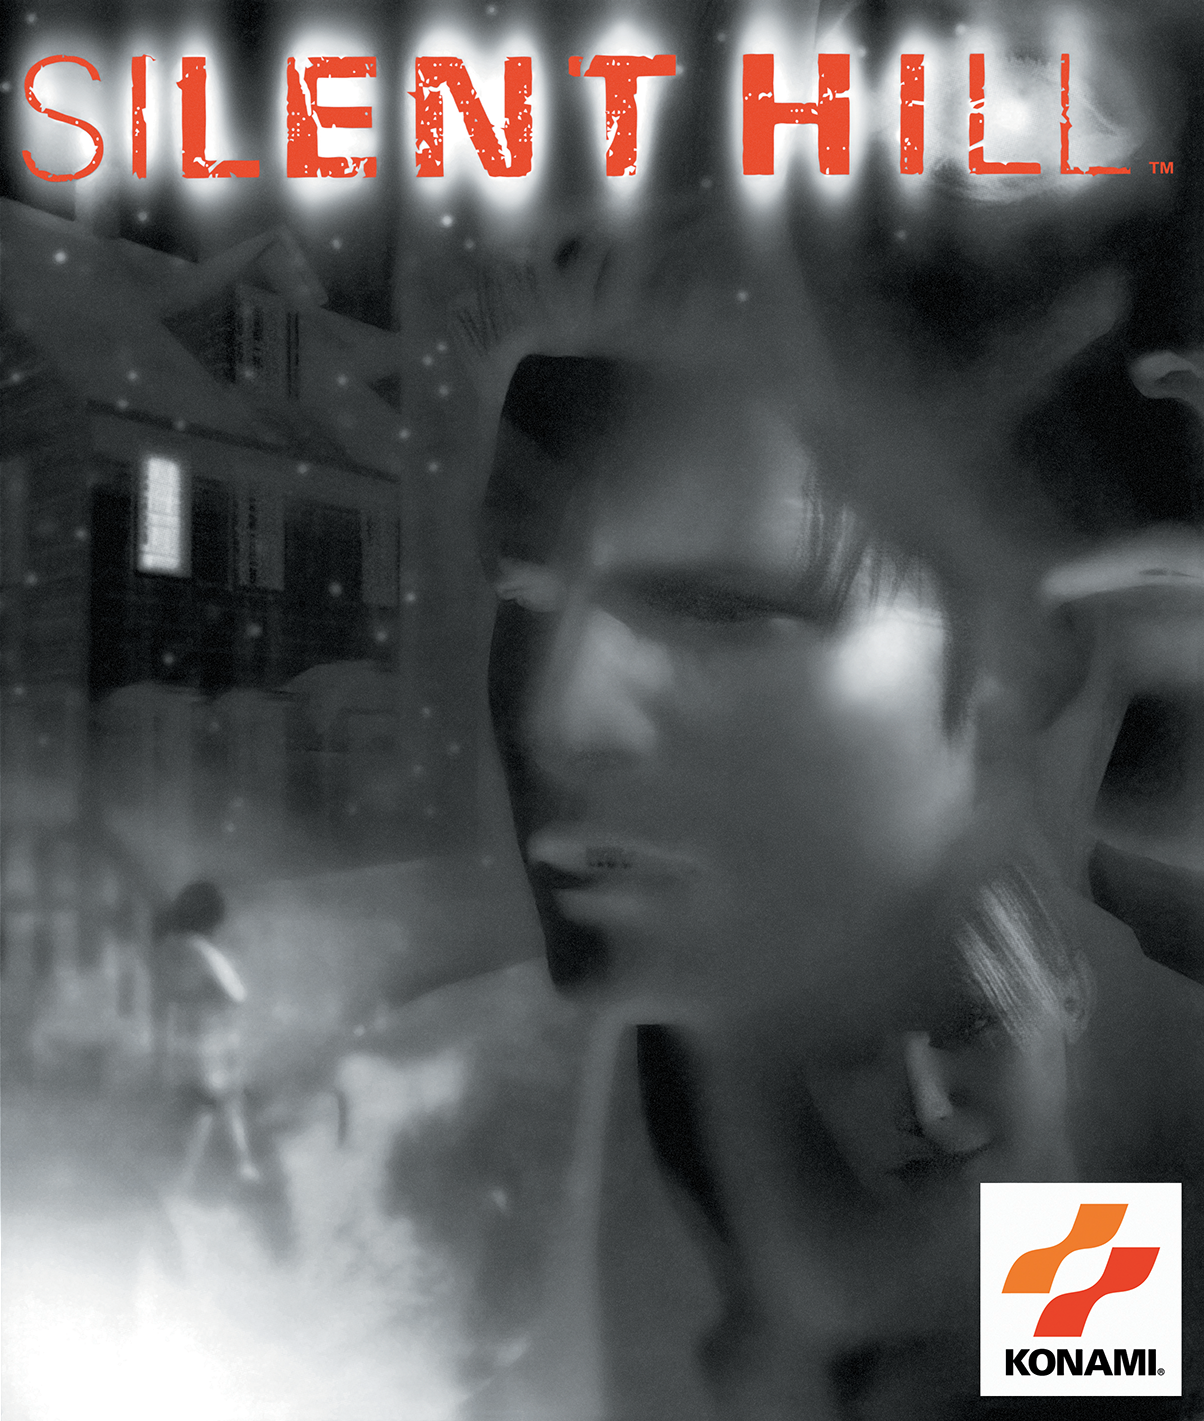 Detonado Silent Hill 2 - PS2 - Nada pra falar então vamo blogar